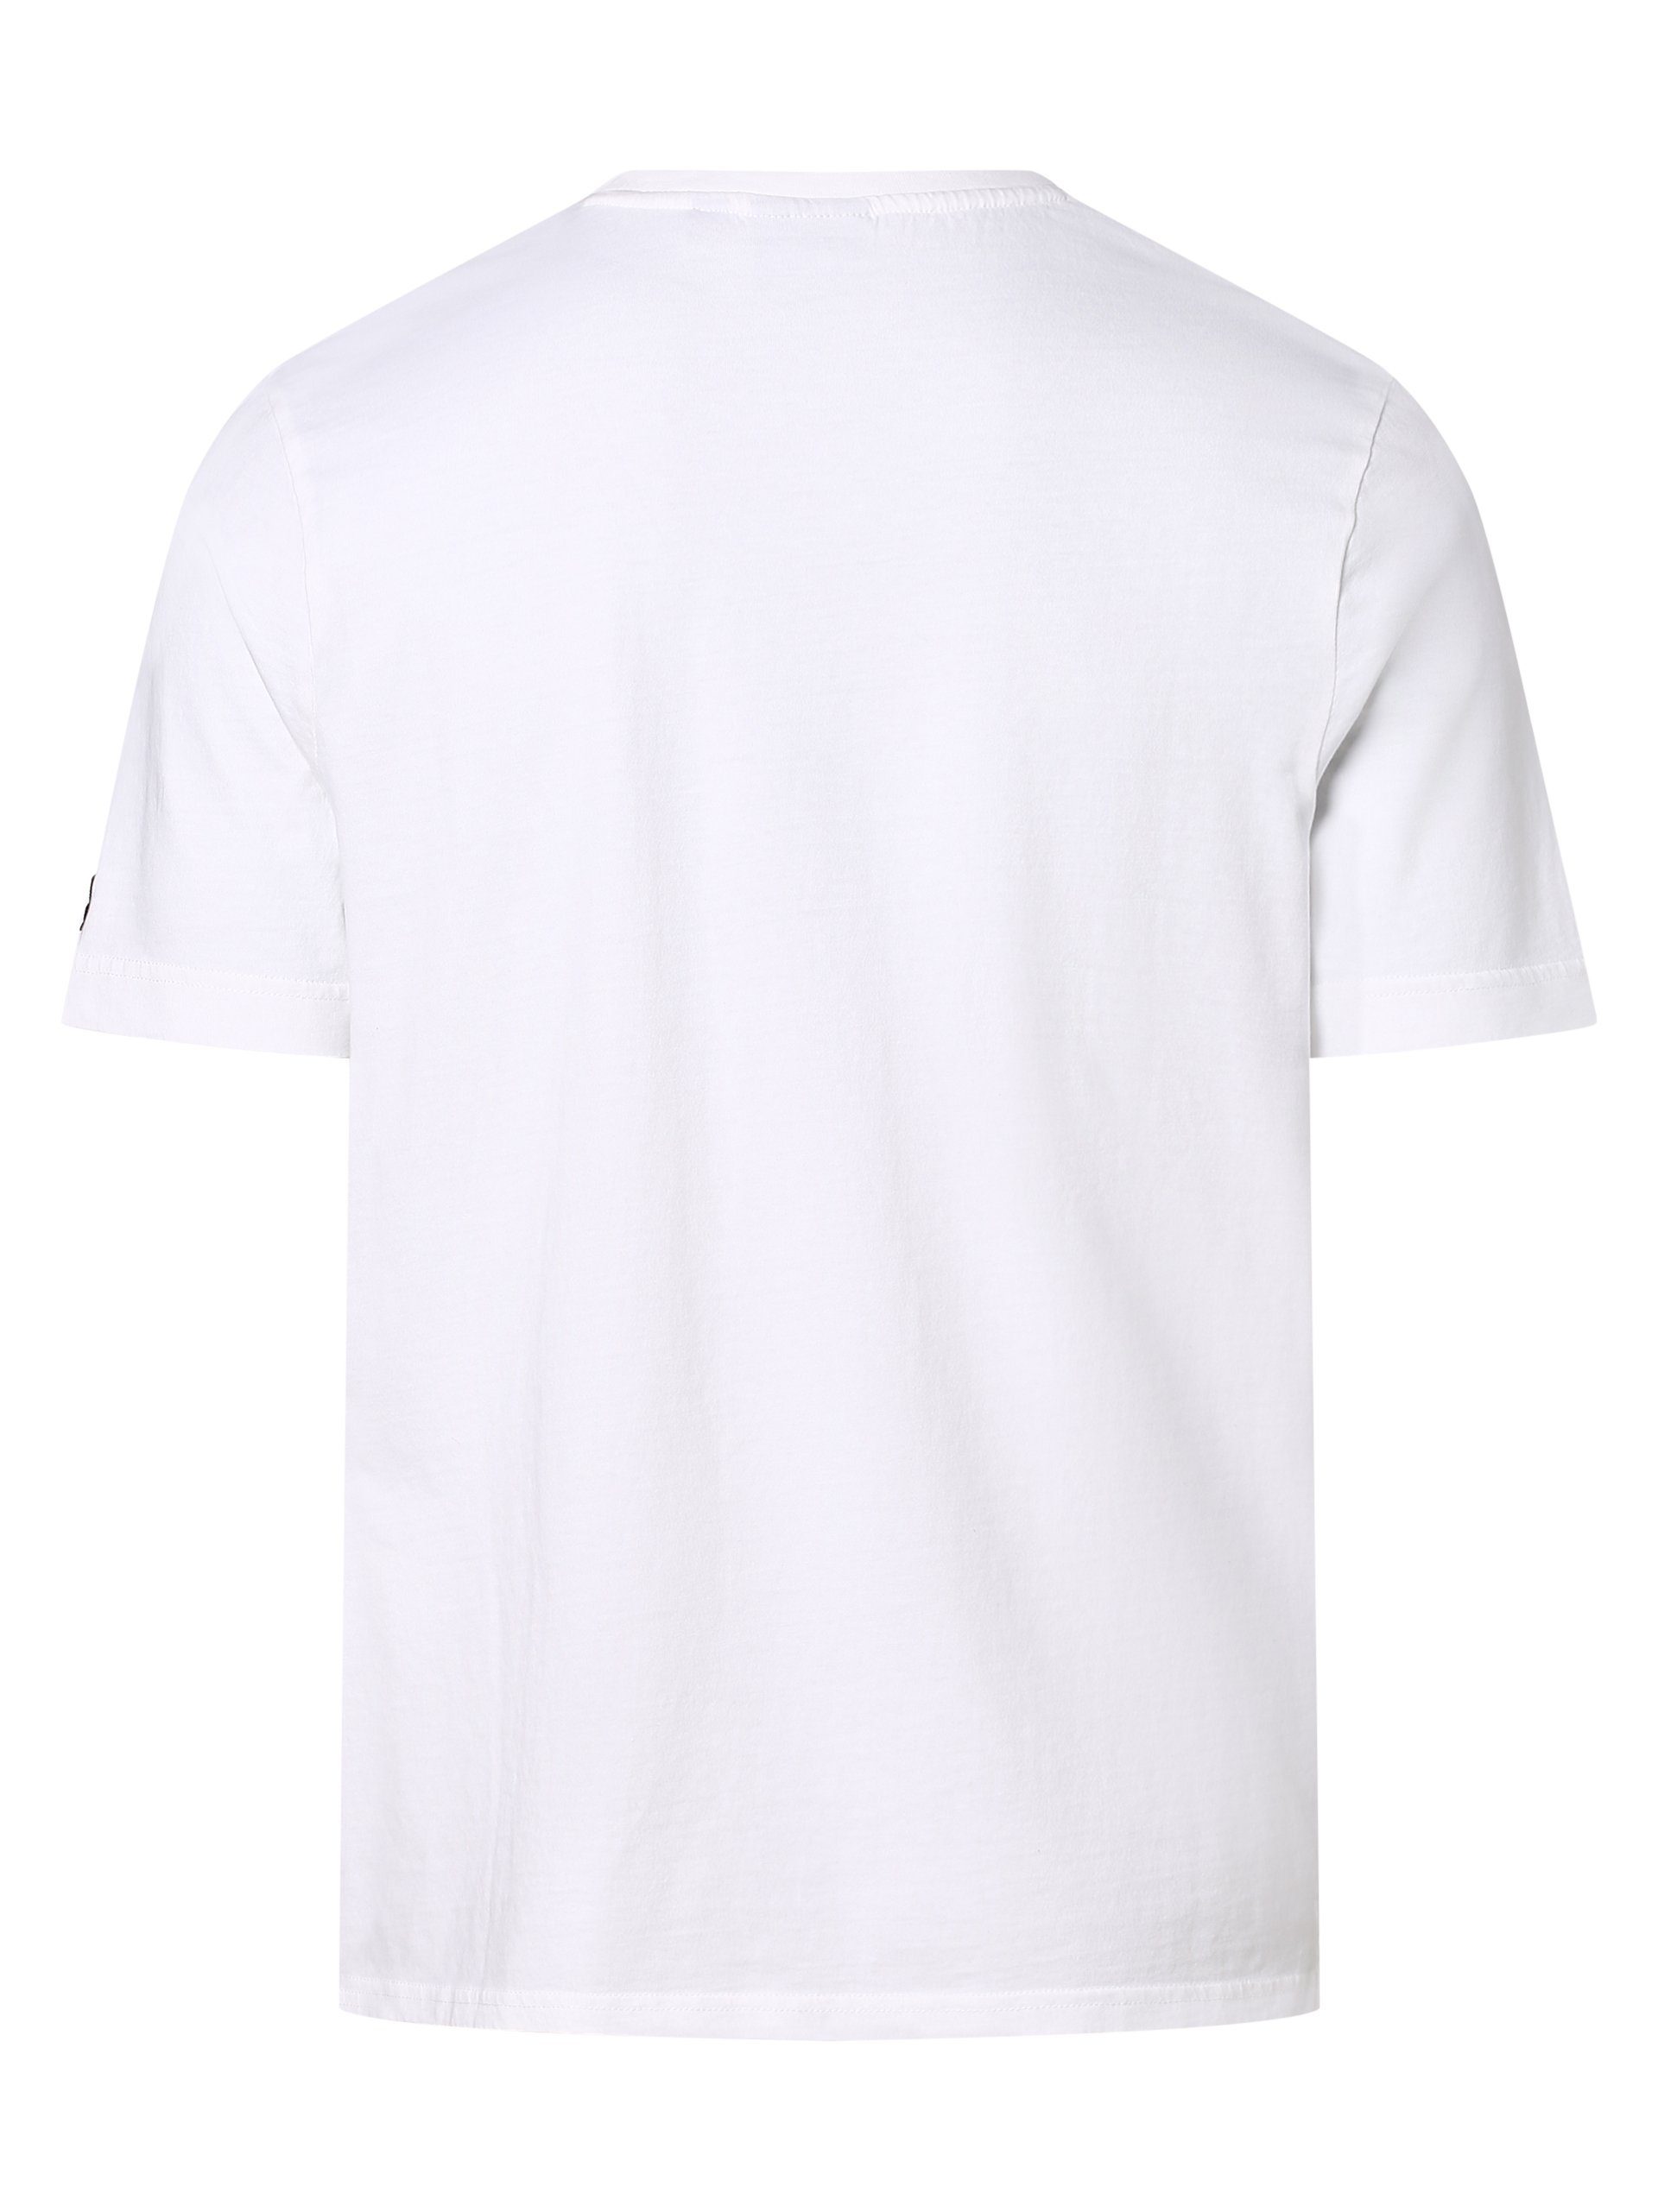 Scott Lyle & T-Shirt weiß